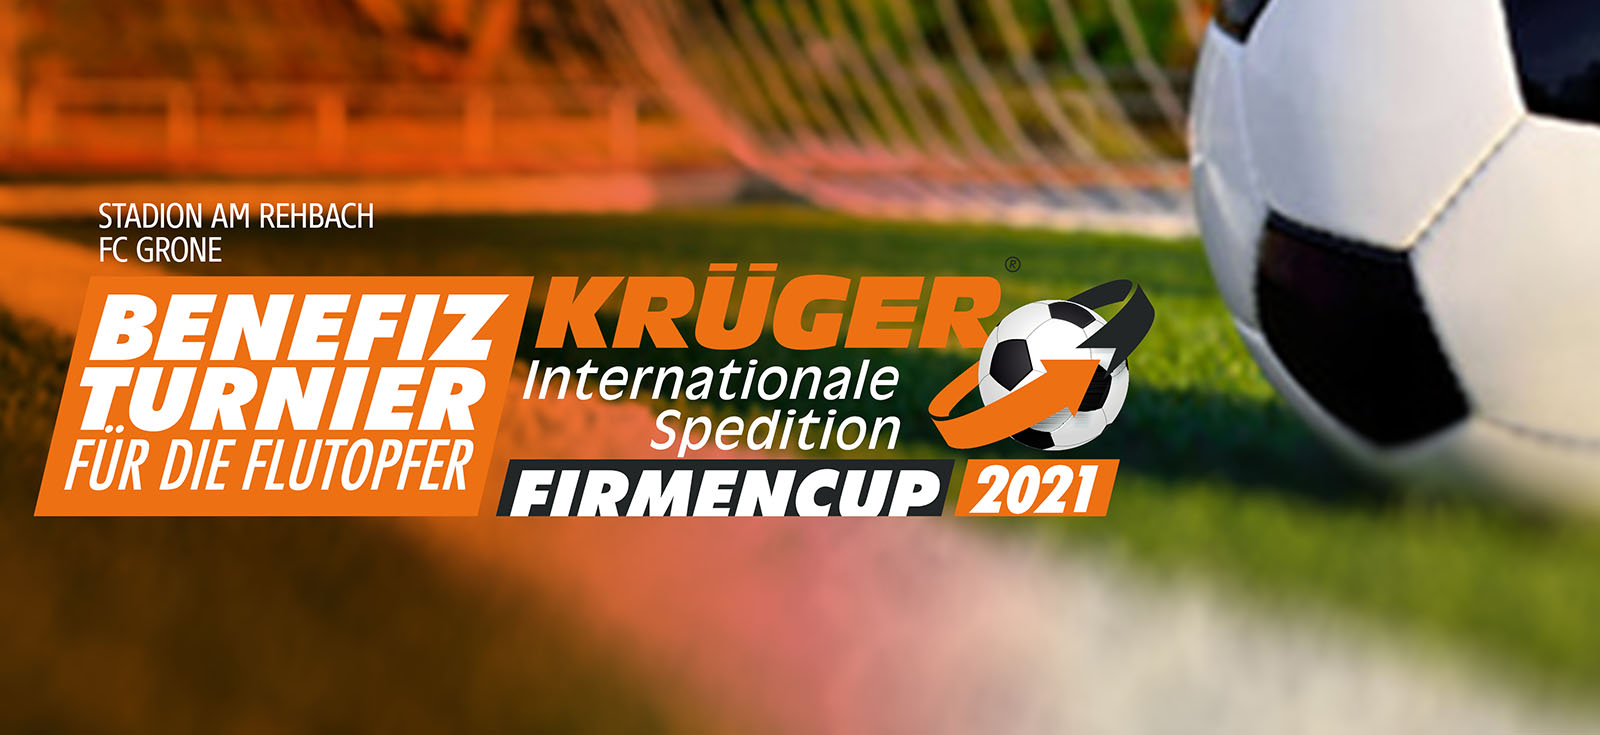 Benefizturnier Krüger Firmencup 2021